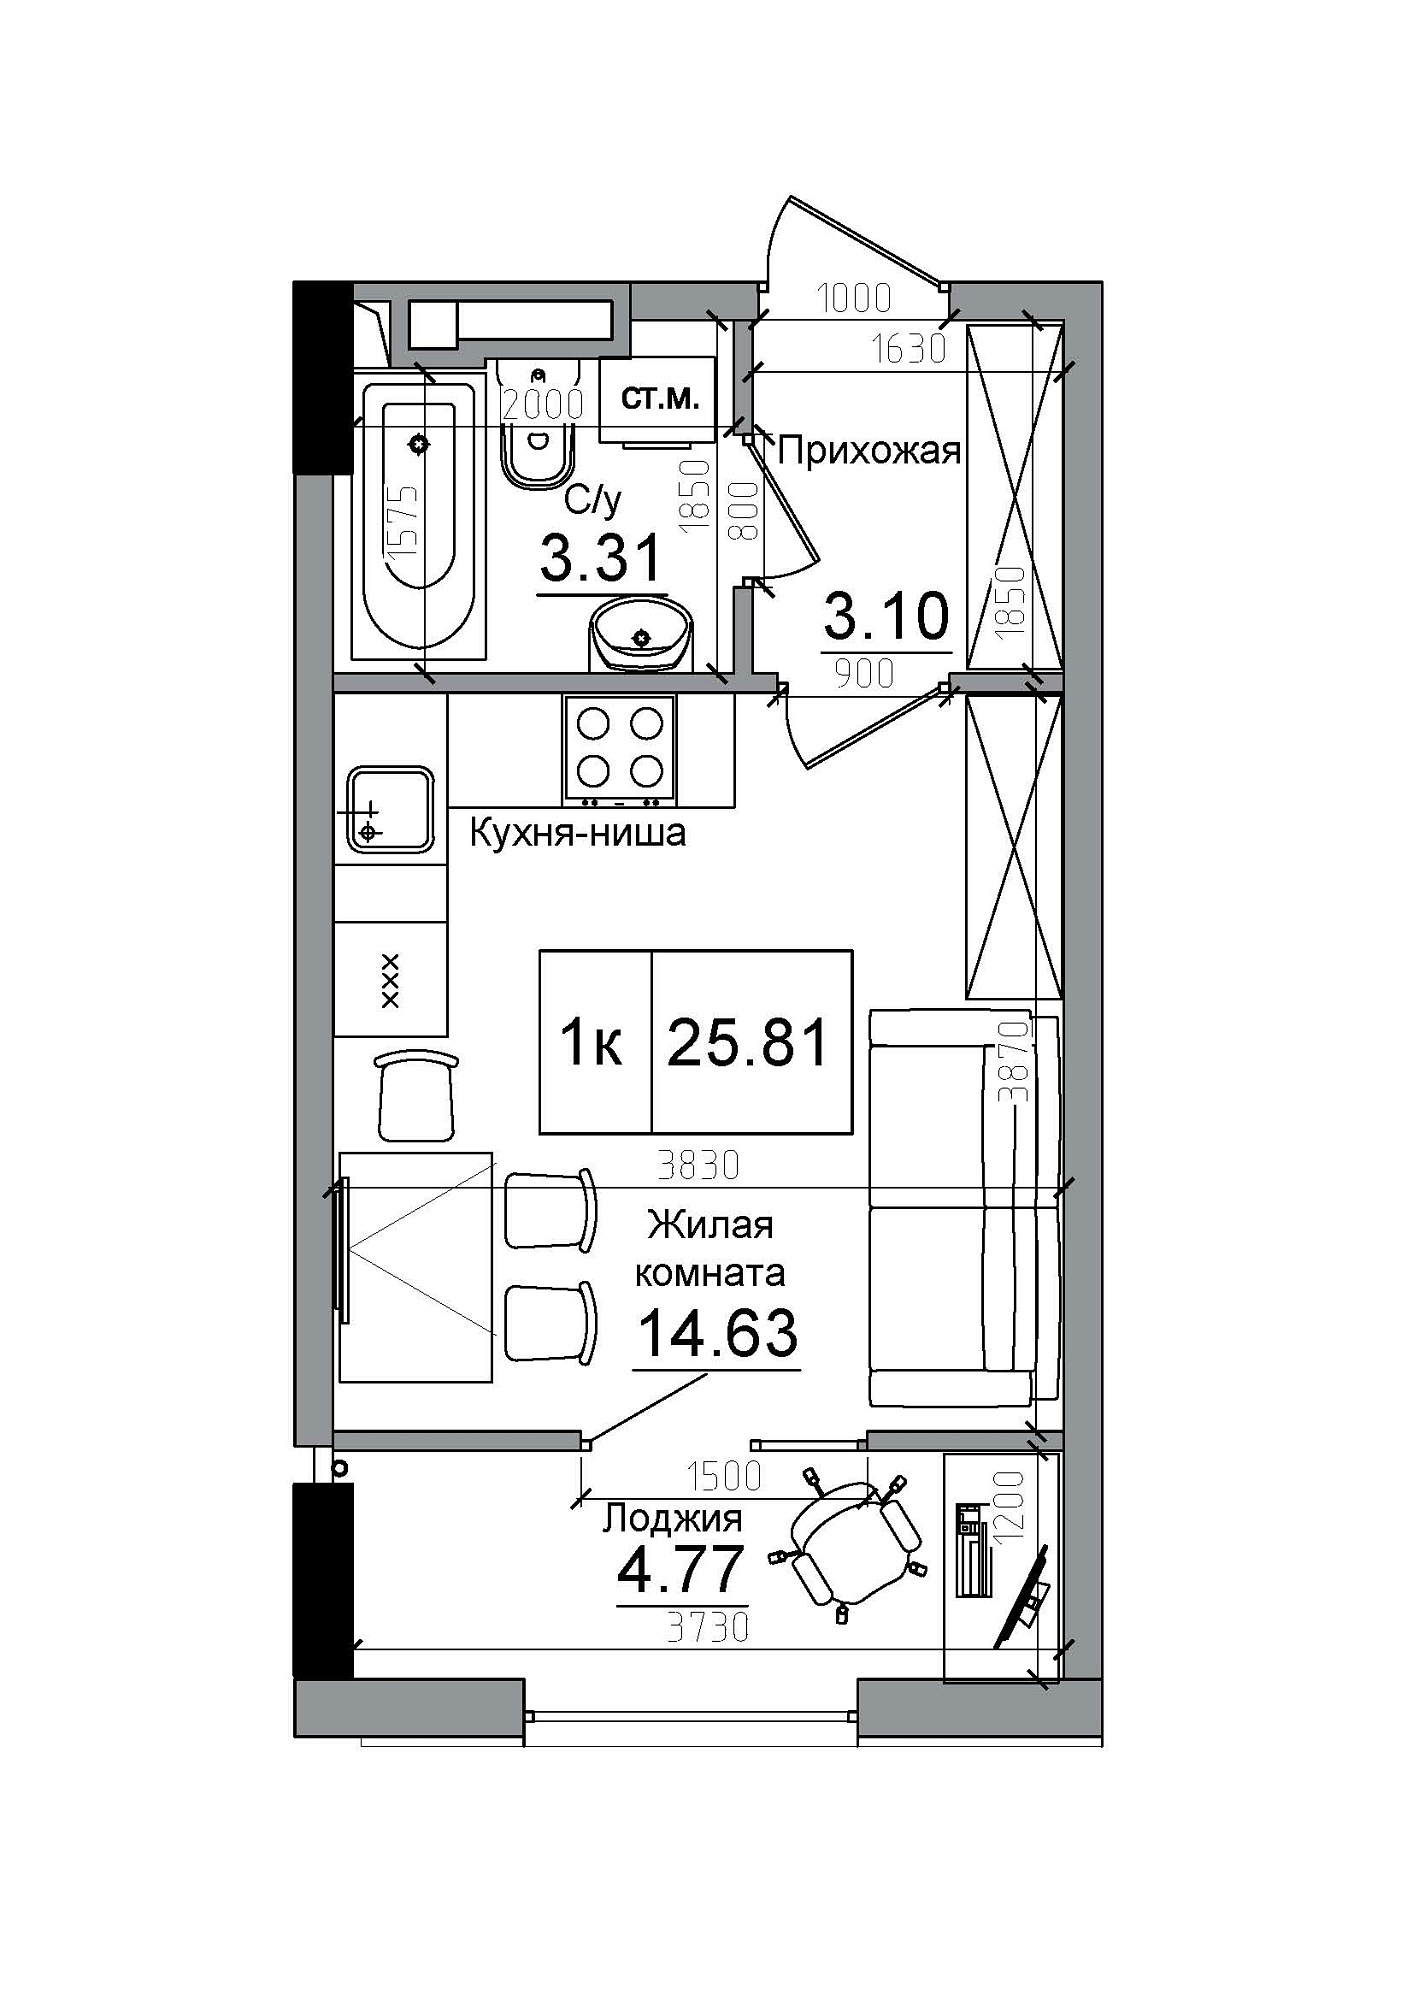 Планування Smart-квартира площею 25.81м2, AB-12-06/00013.